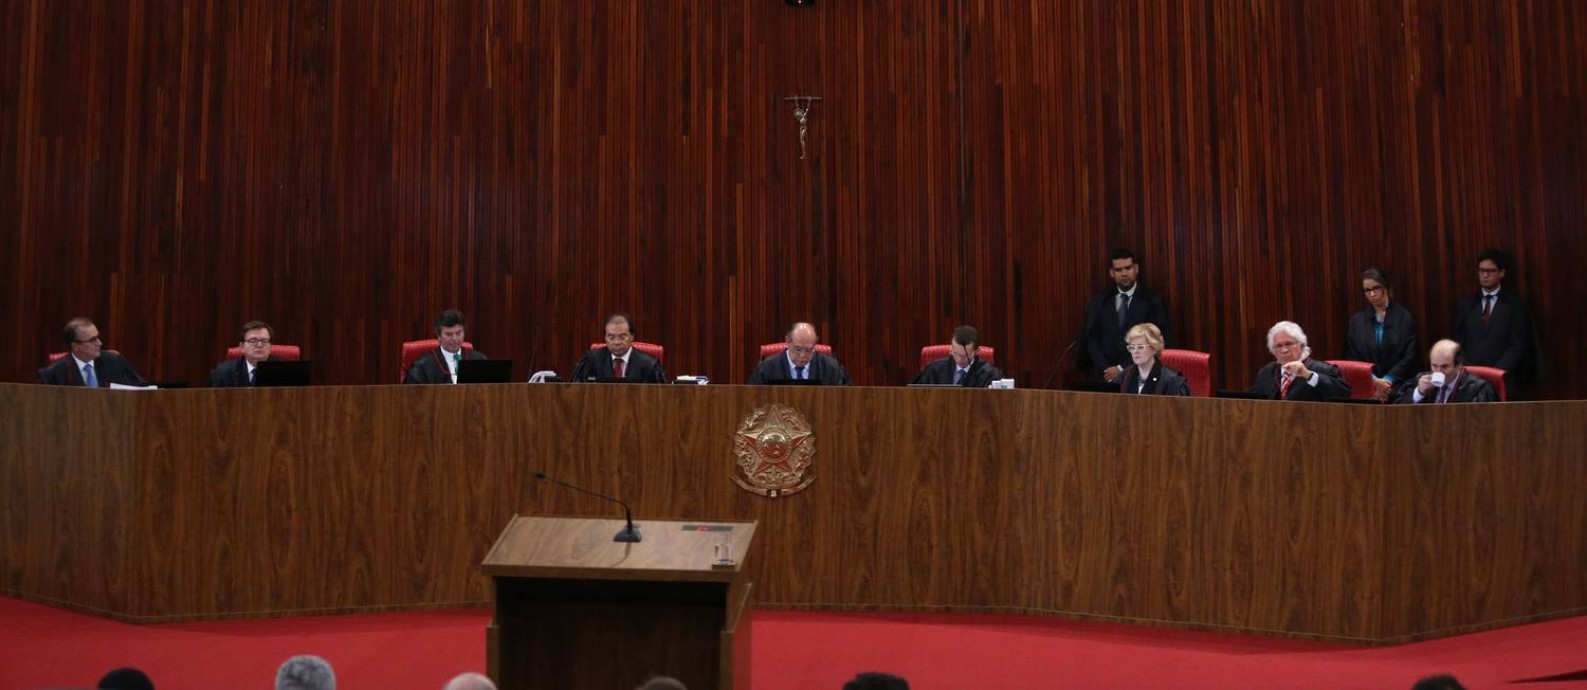 O plenário do Tribunal Superior Eleitoral Foto: Ailton de Freitas / Agência O Globo